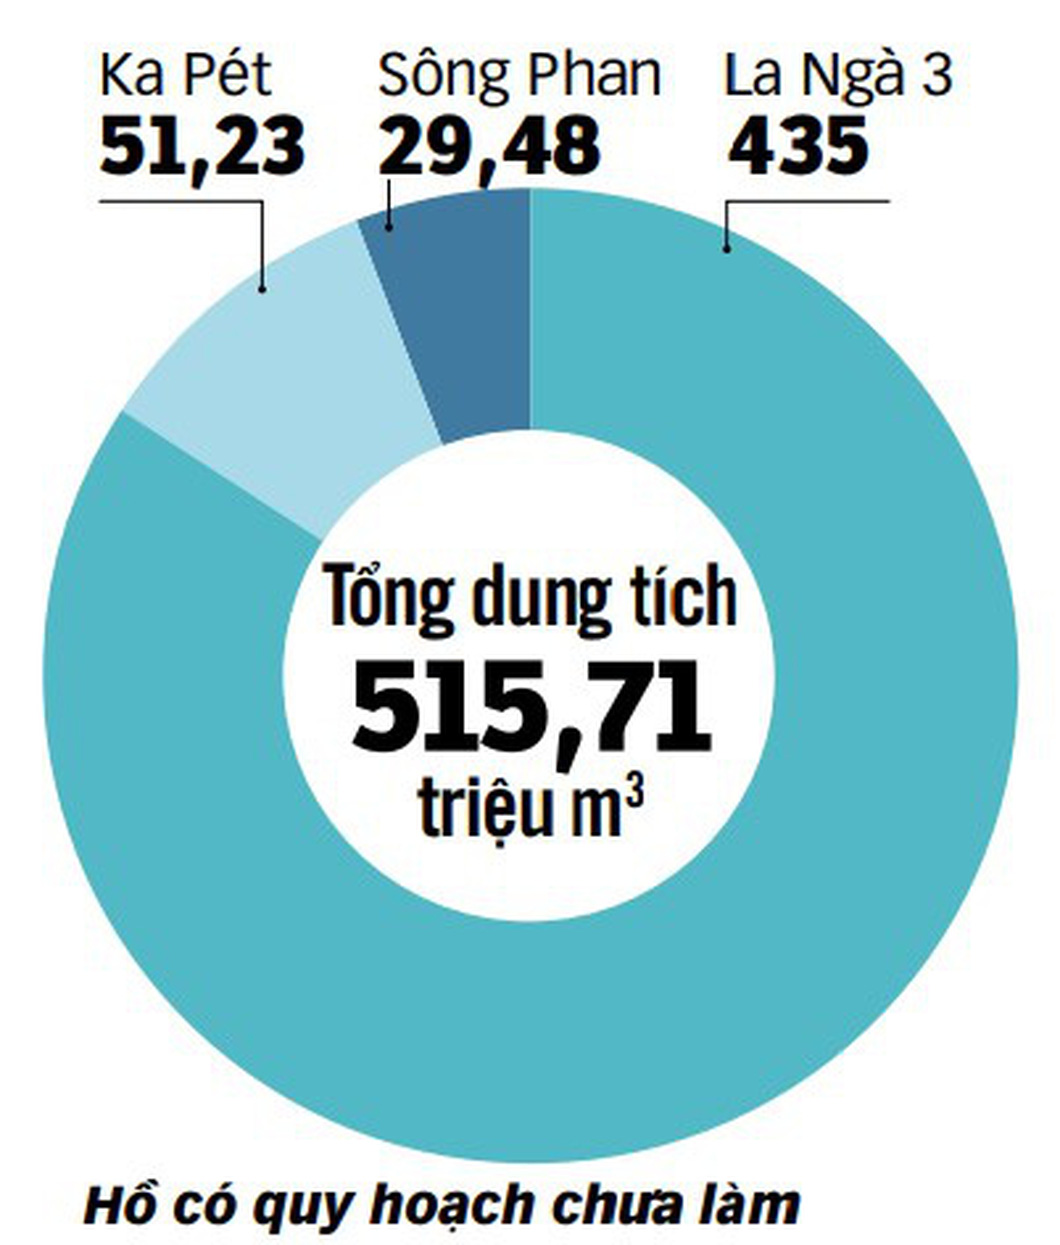 Nguồn: Thông kê của tỉnh Bình Thuận - Đồ họa: N.KH.